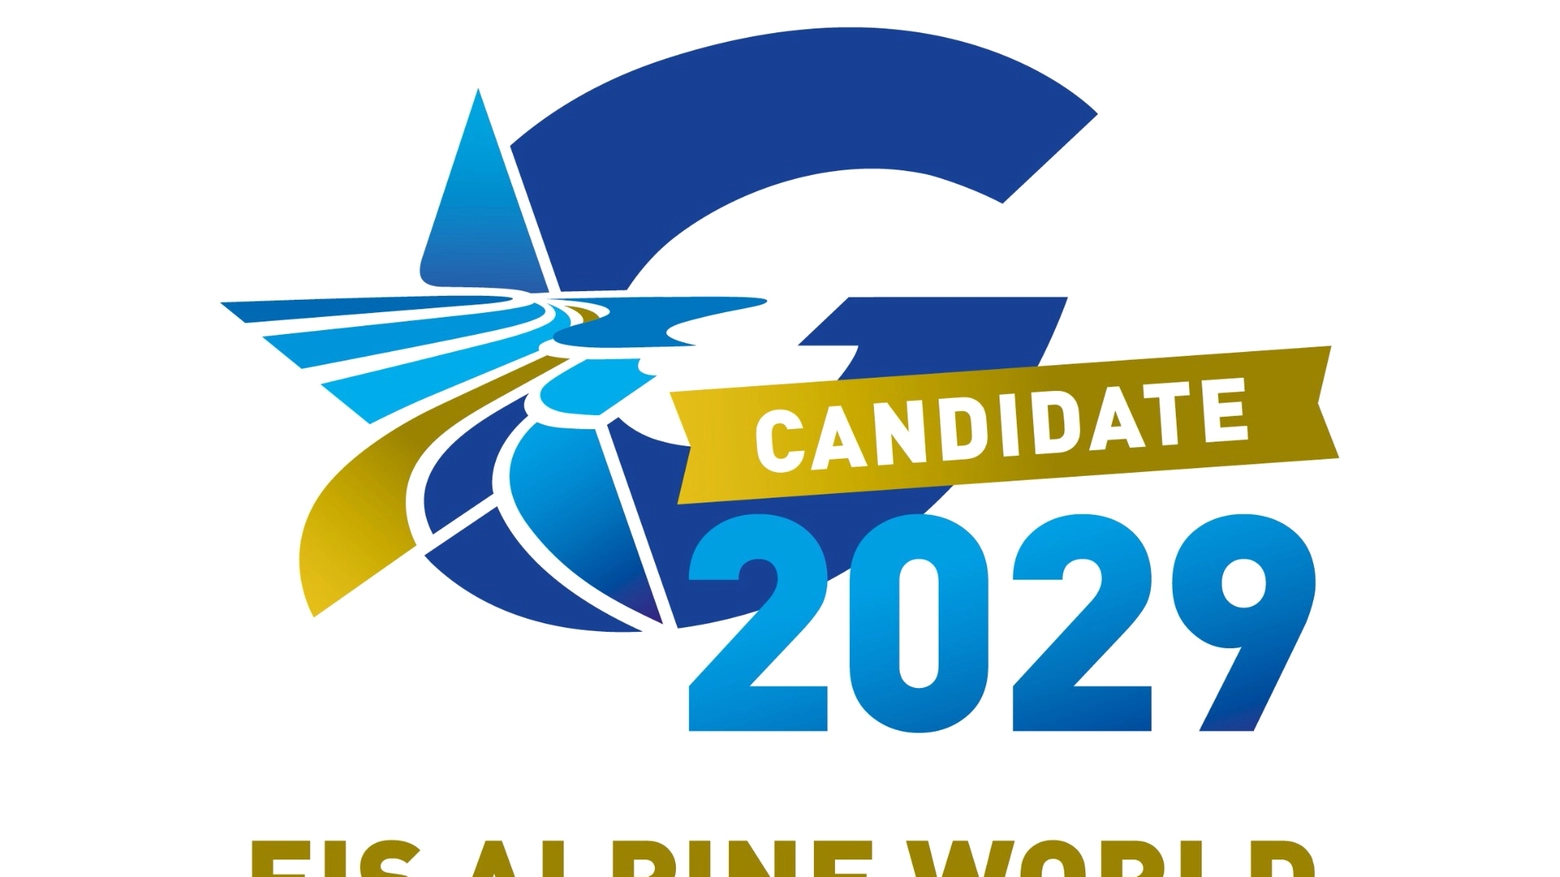 Il logo di Val Gardena candidata ai mondiali 2029